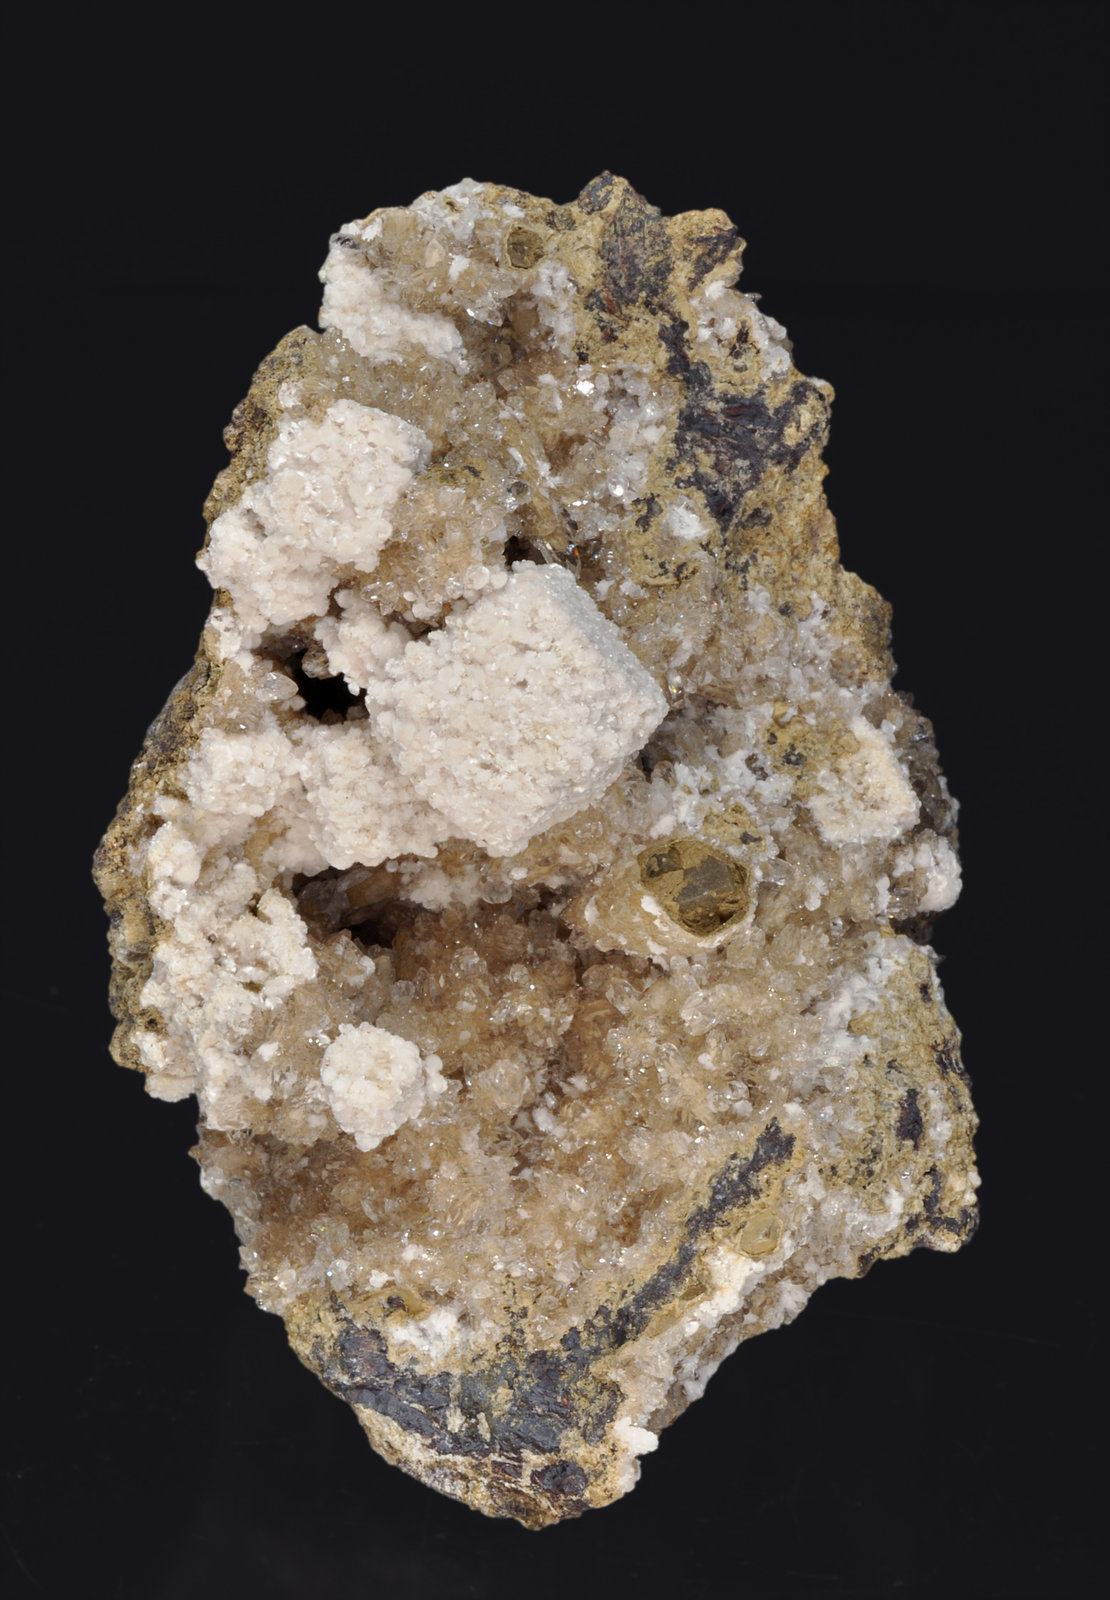 specimens/s_imagesR1/Oyelite-EZ56R1f.jpg